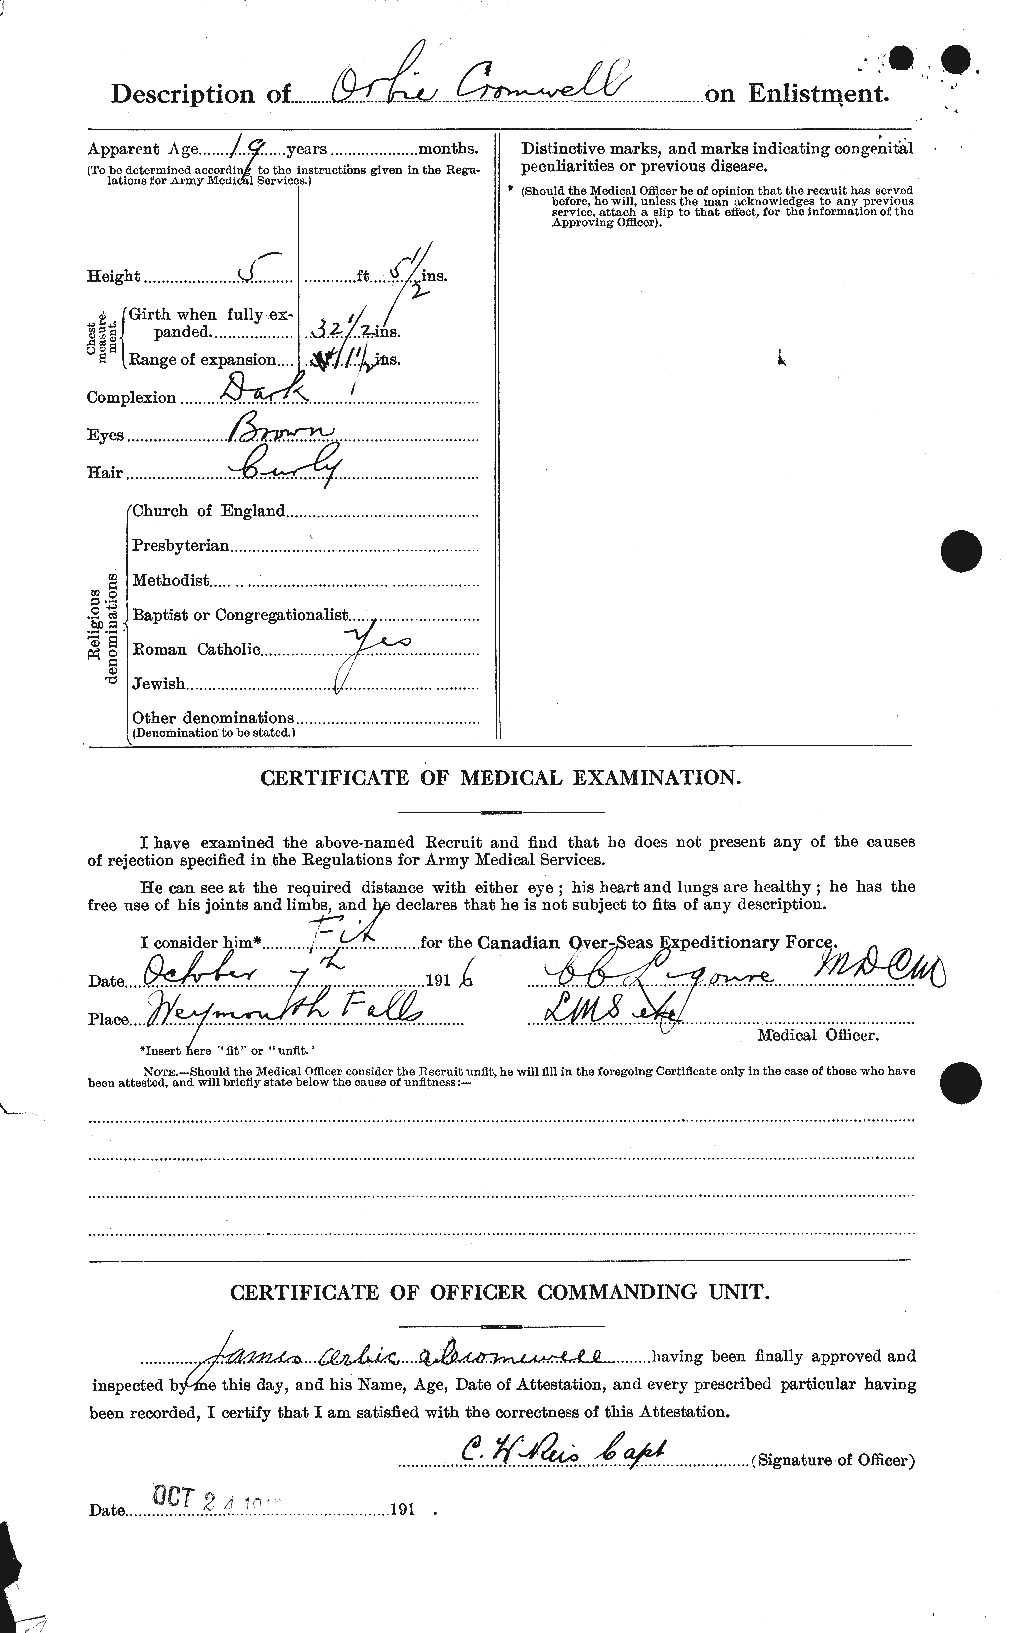 Dossiers du Personnel de la Première Guerre mondiale - CEC 064925b